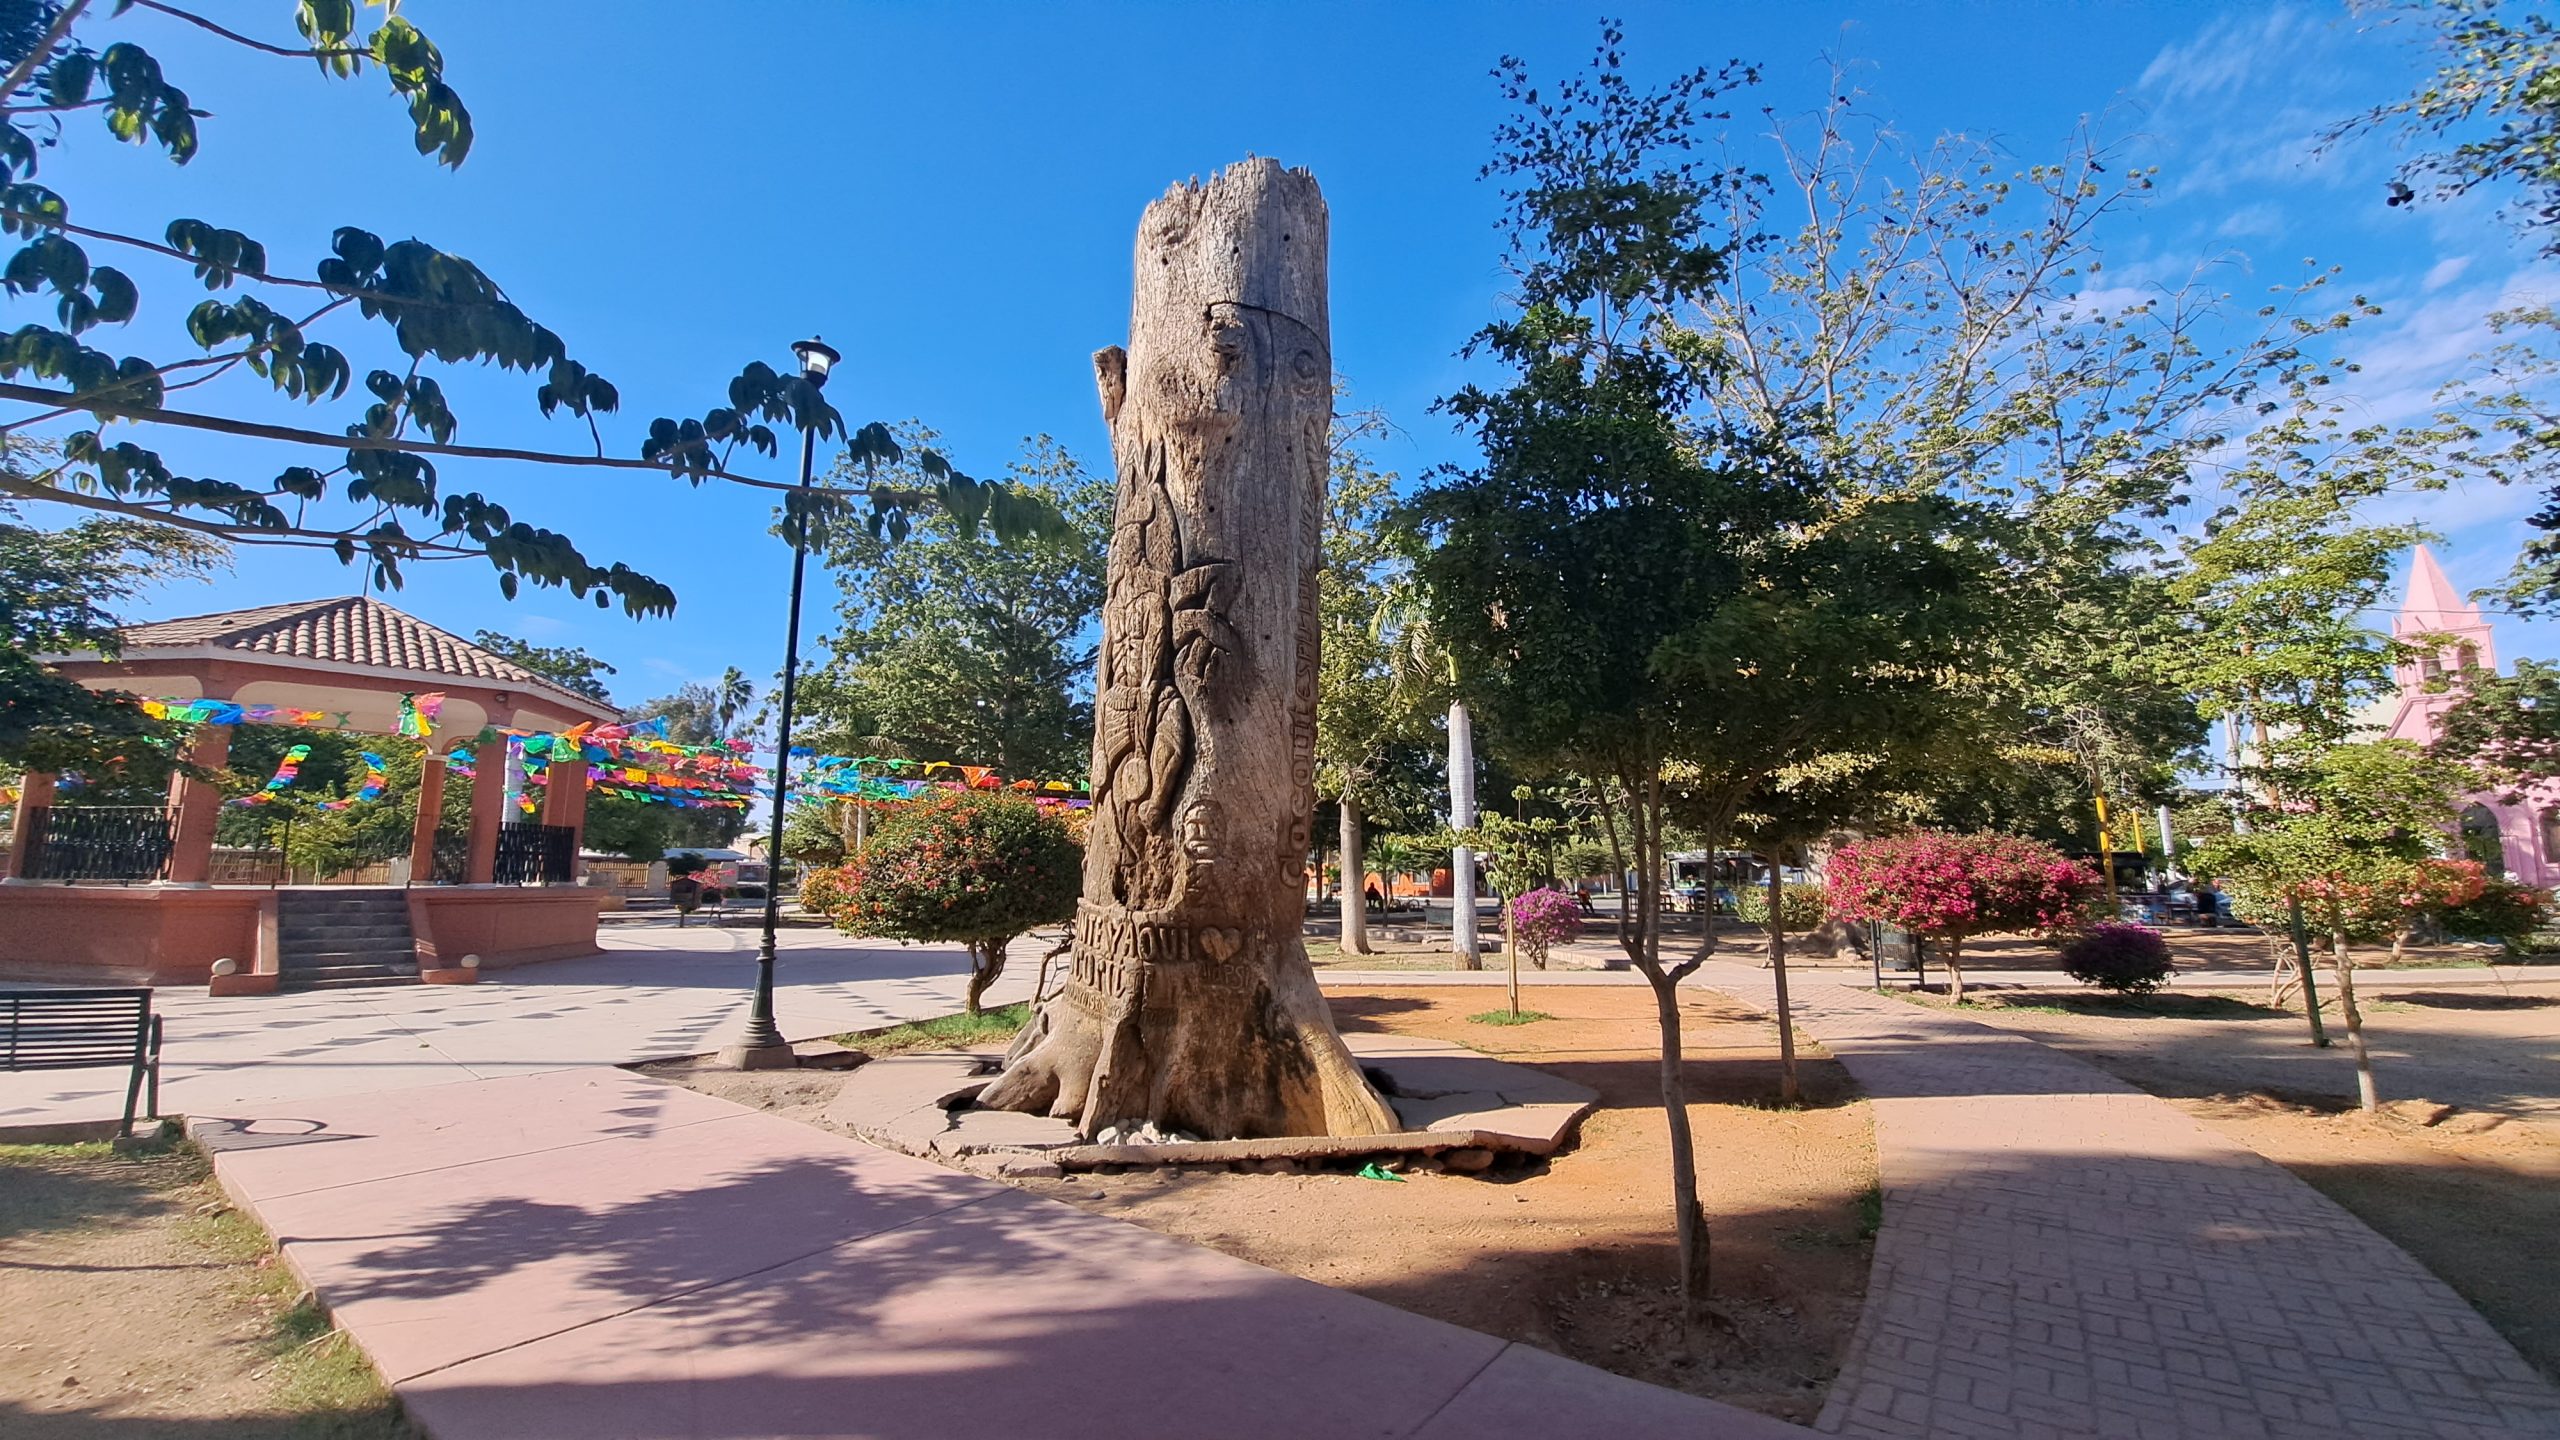 Podrían remover a la avenida Miguel Alemán escultura en tronco de la plaza en Cócorit